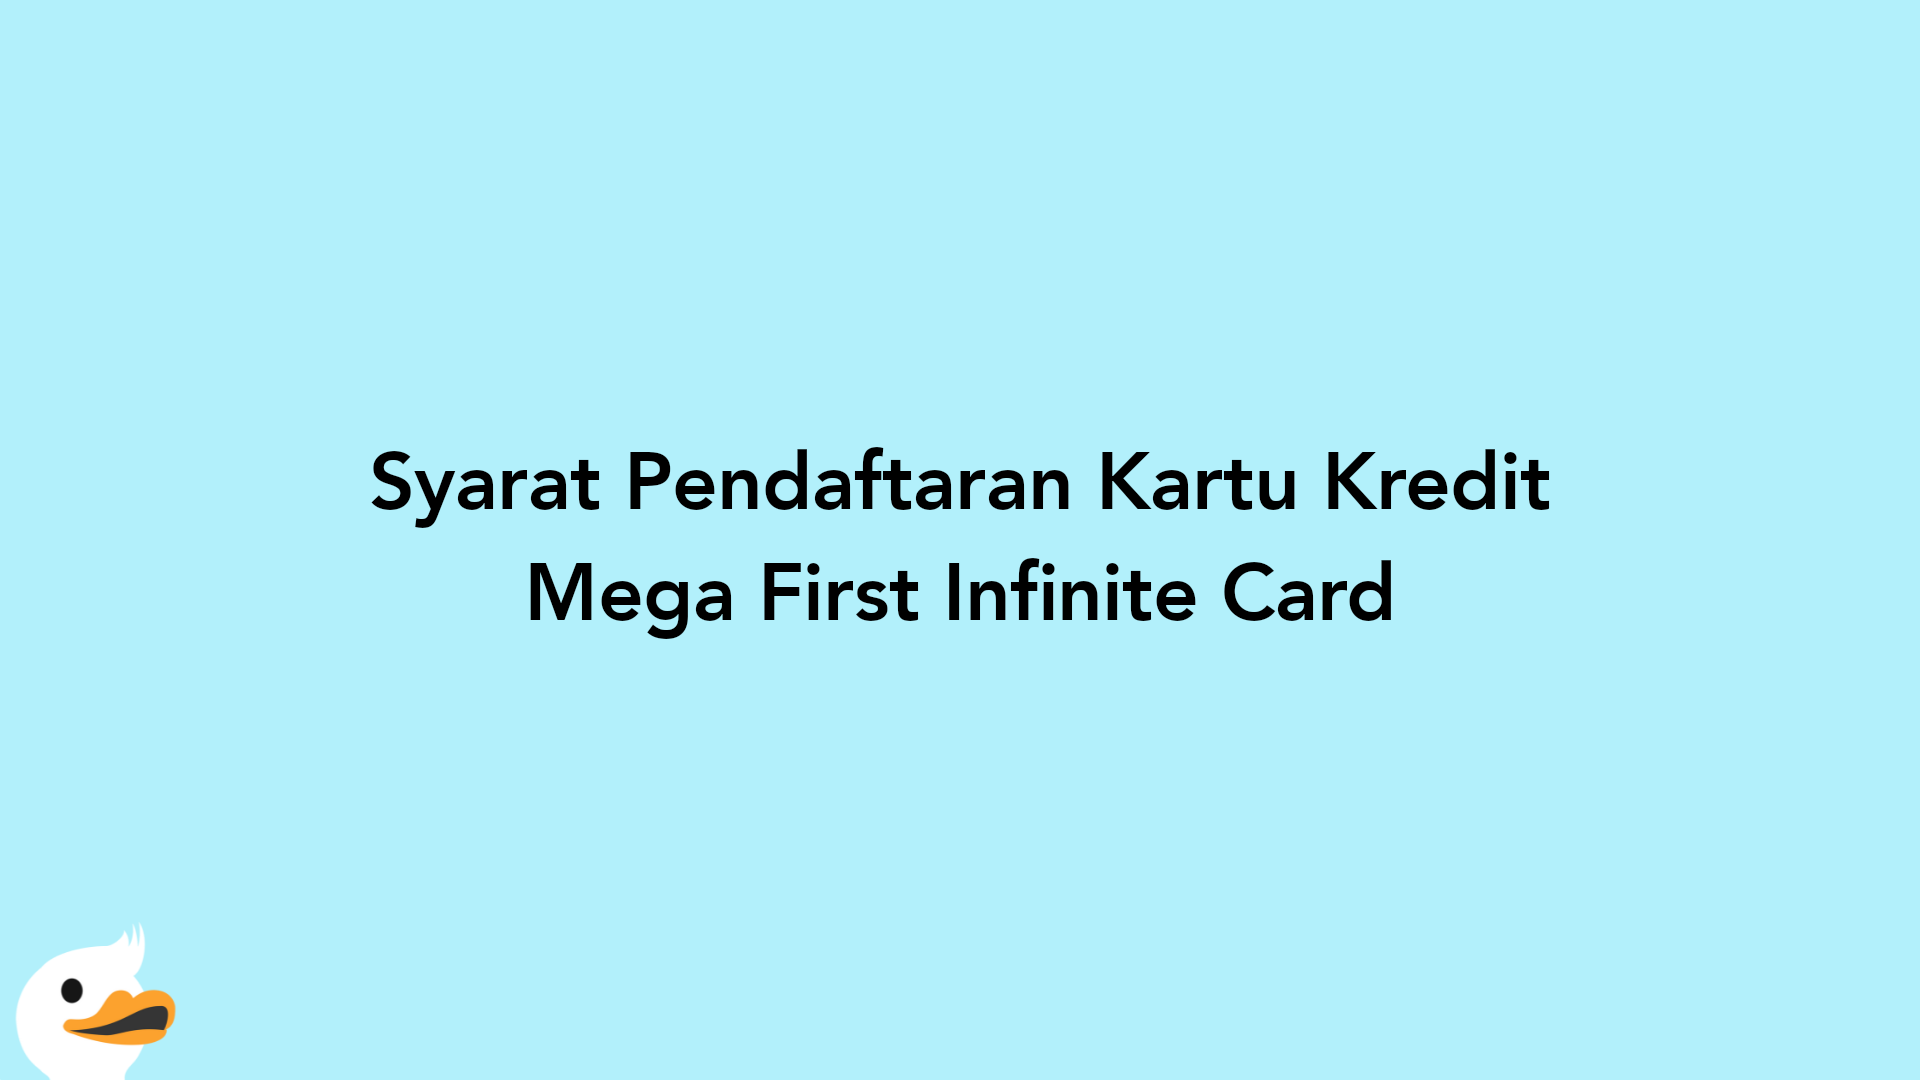 Syarat Pendaftaran Kartu Kredit Mega First Infinite Card